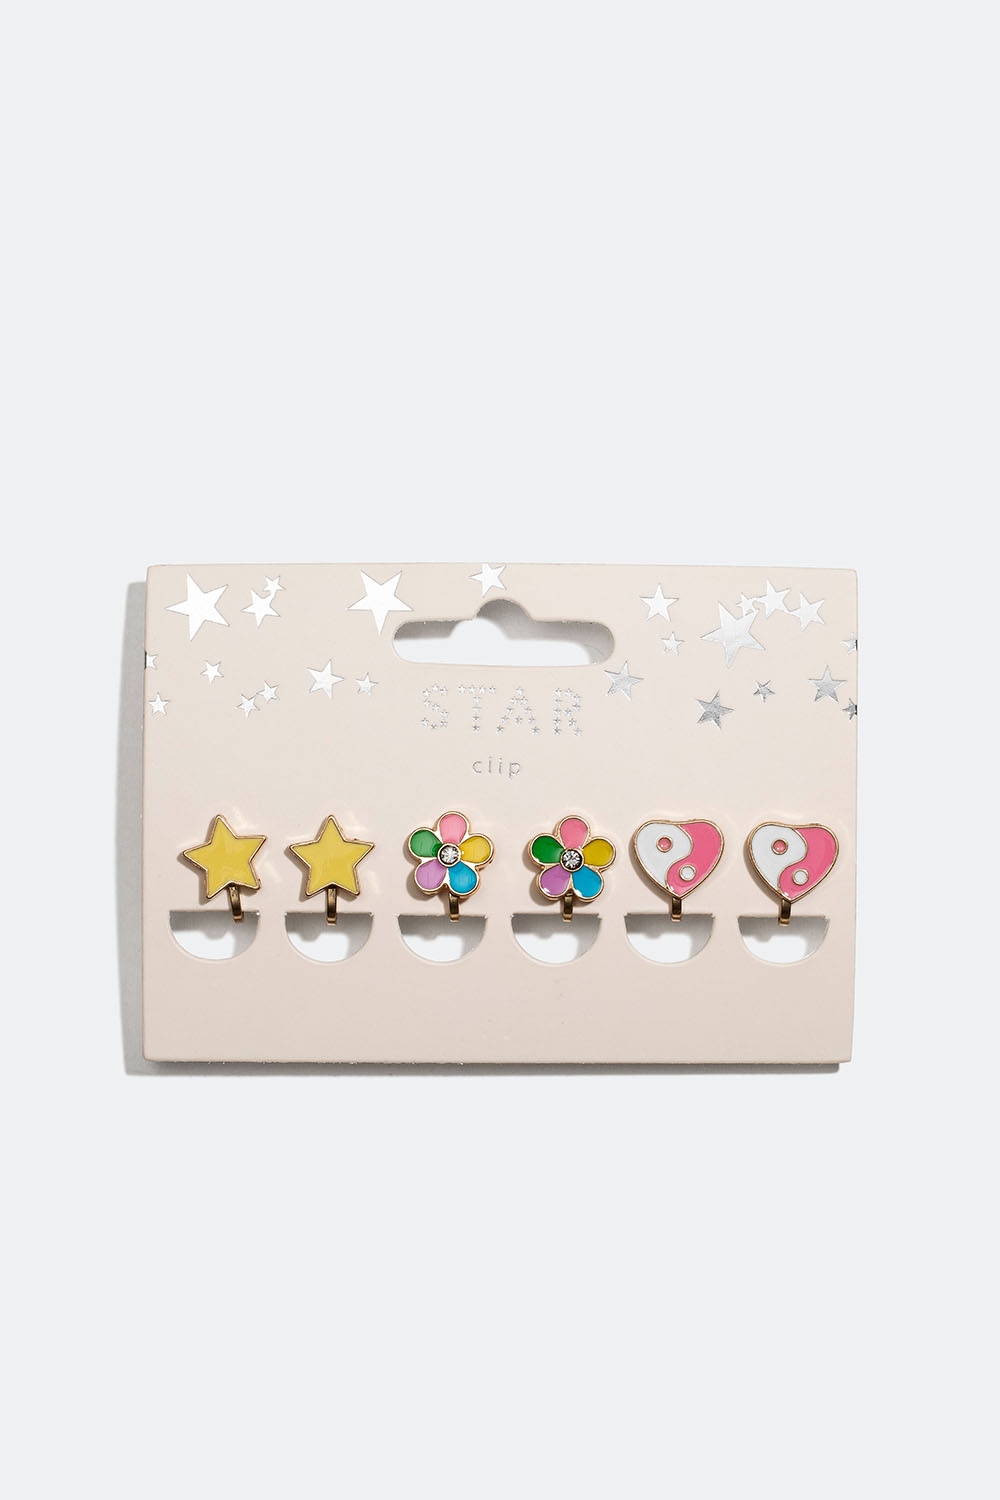 Clipsörhängen med stjänor, blommor och hjärtan, 3-pack i gruppen Barn / Barnsmycken / Barnörhängen hos Glitter (402000039900)